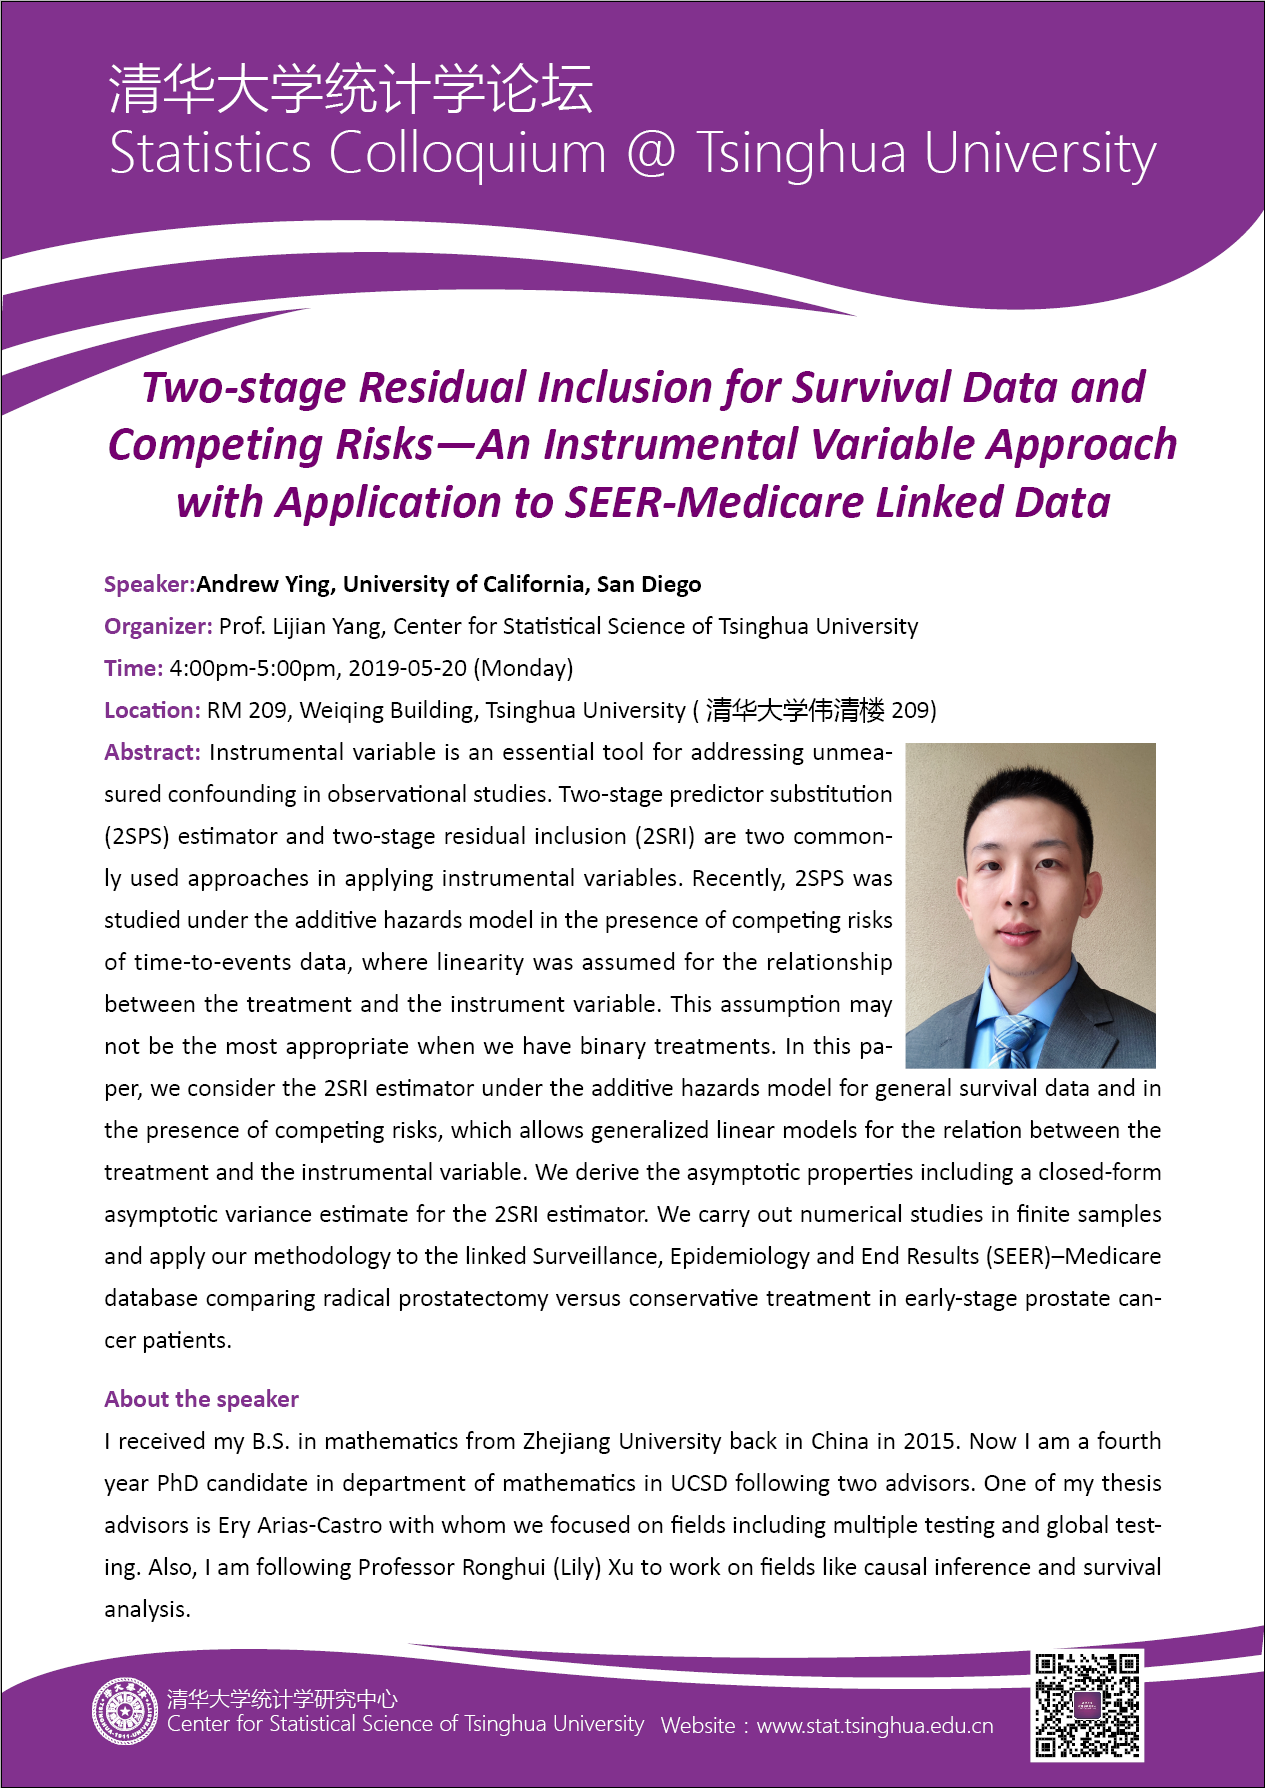 【统计学论坛】Two-stage Residual Inclusion for Survival Data and Competing Risks-An Instrumental Variable Approach with Application to SEER-Medicare Linked Data